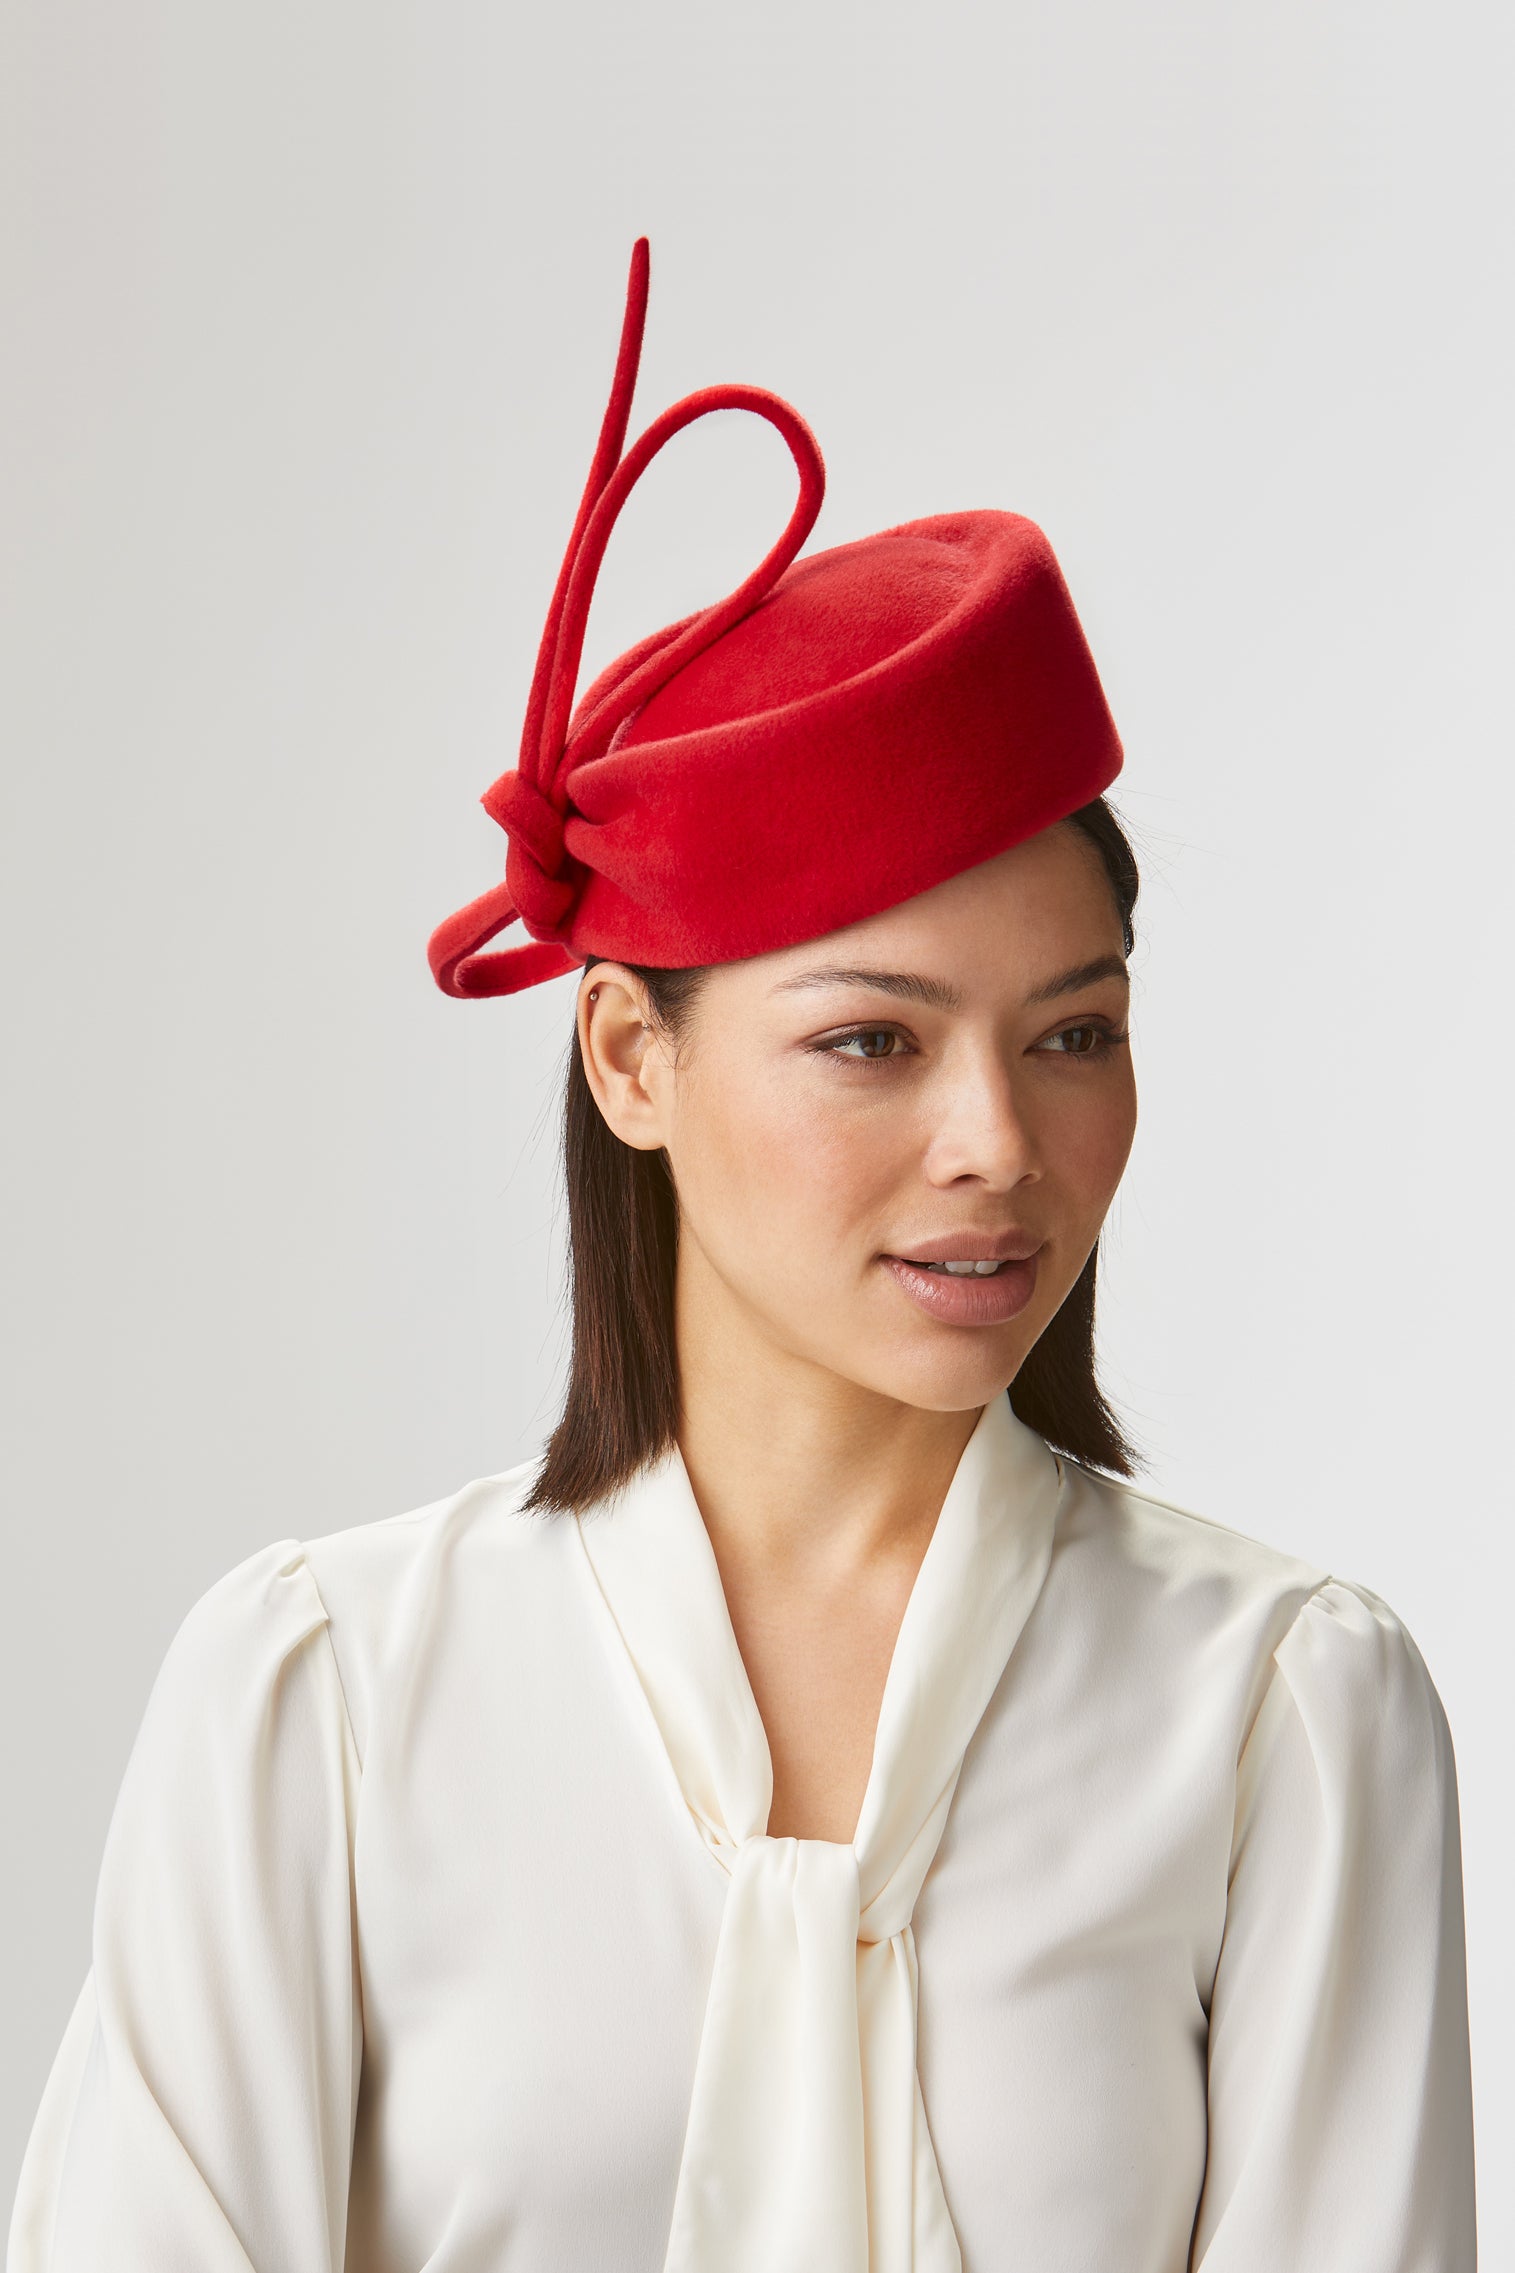 Mayfair Red Pillbox Hat - Kentucky Derby Hats for Women - Lock & Co. Hatters London UK